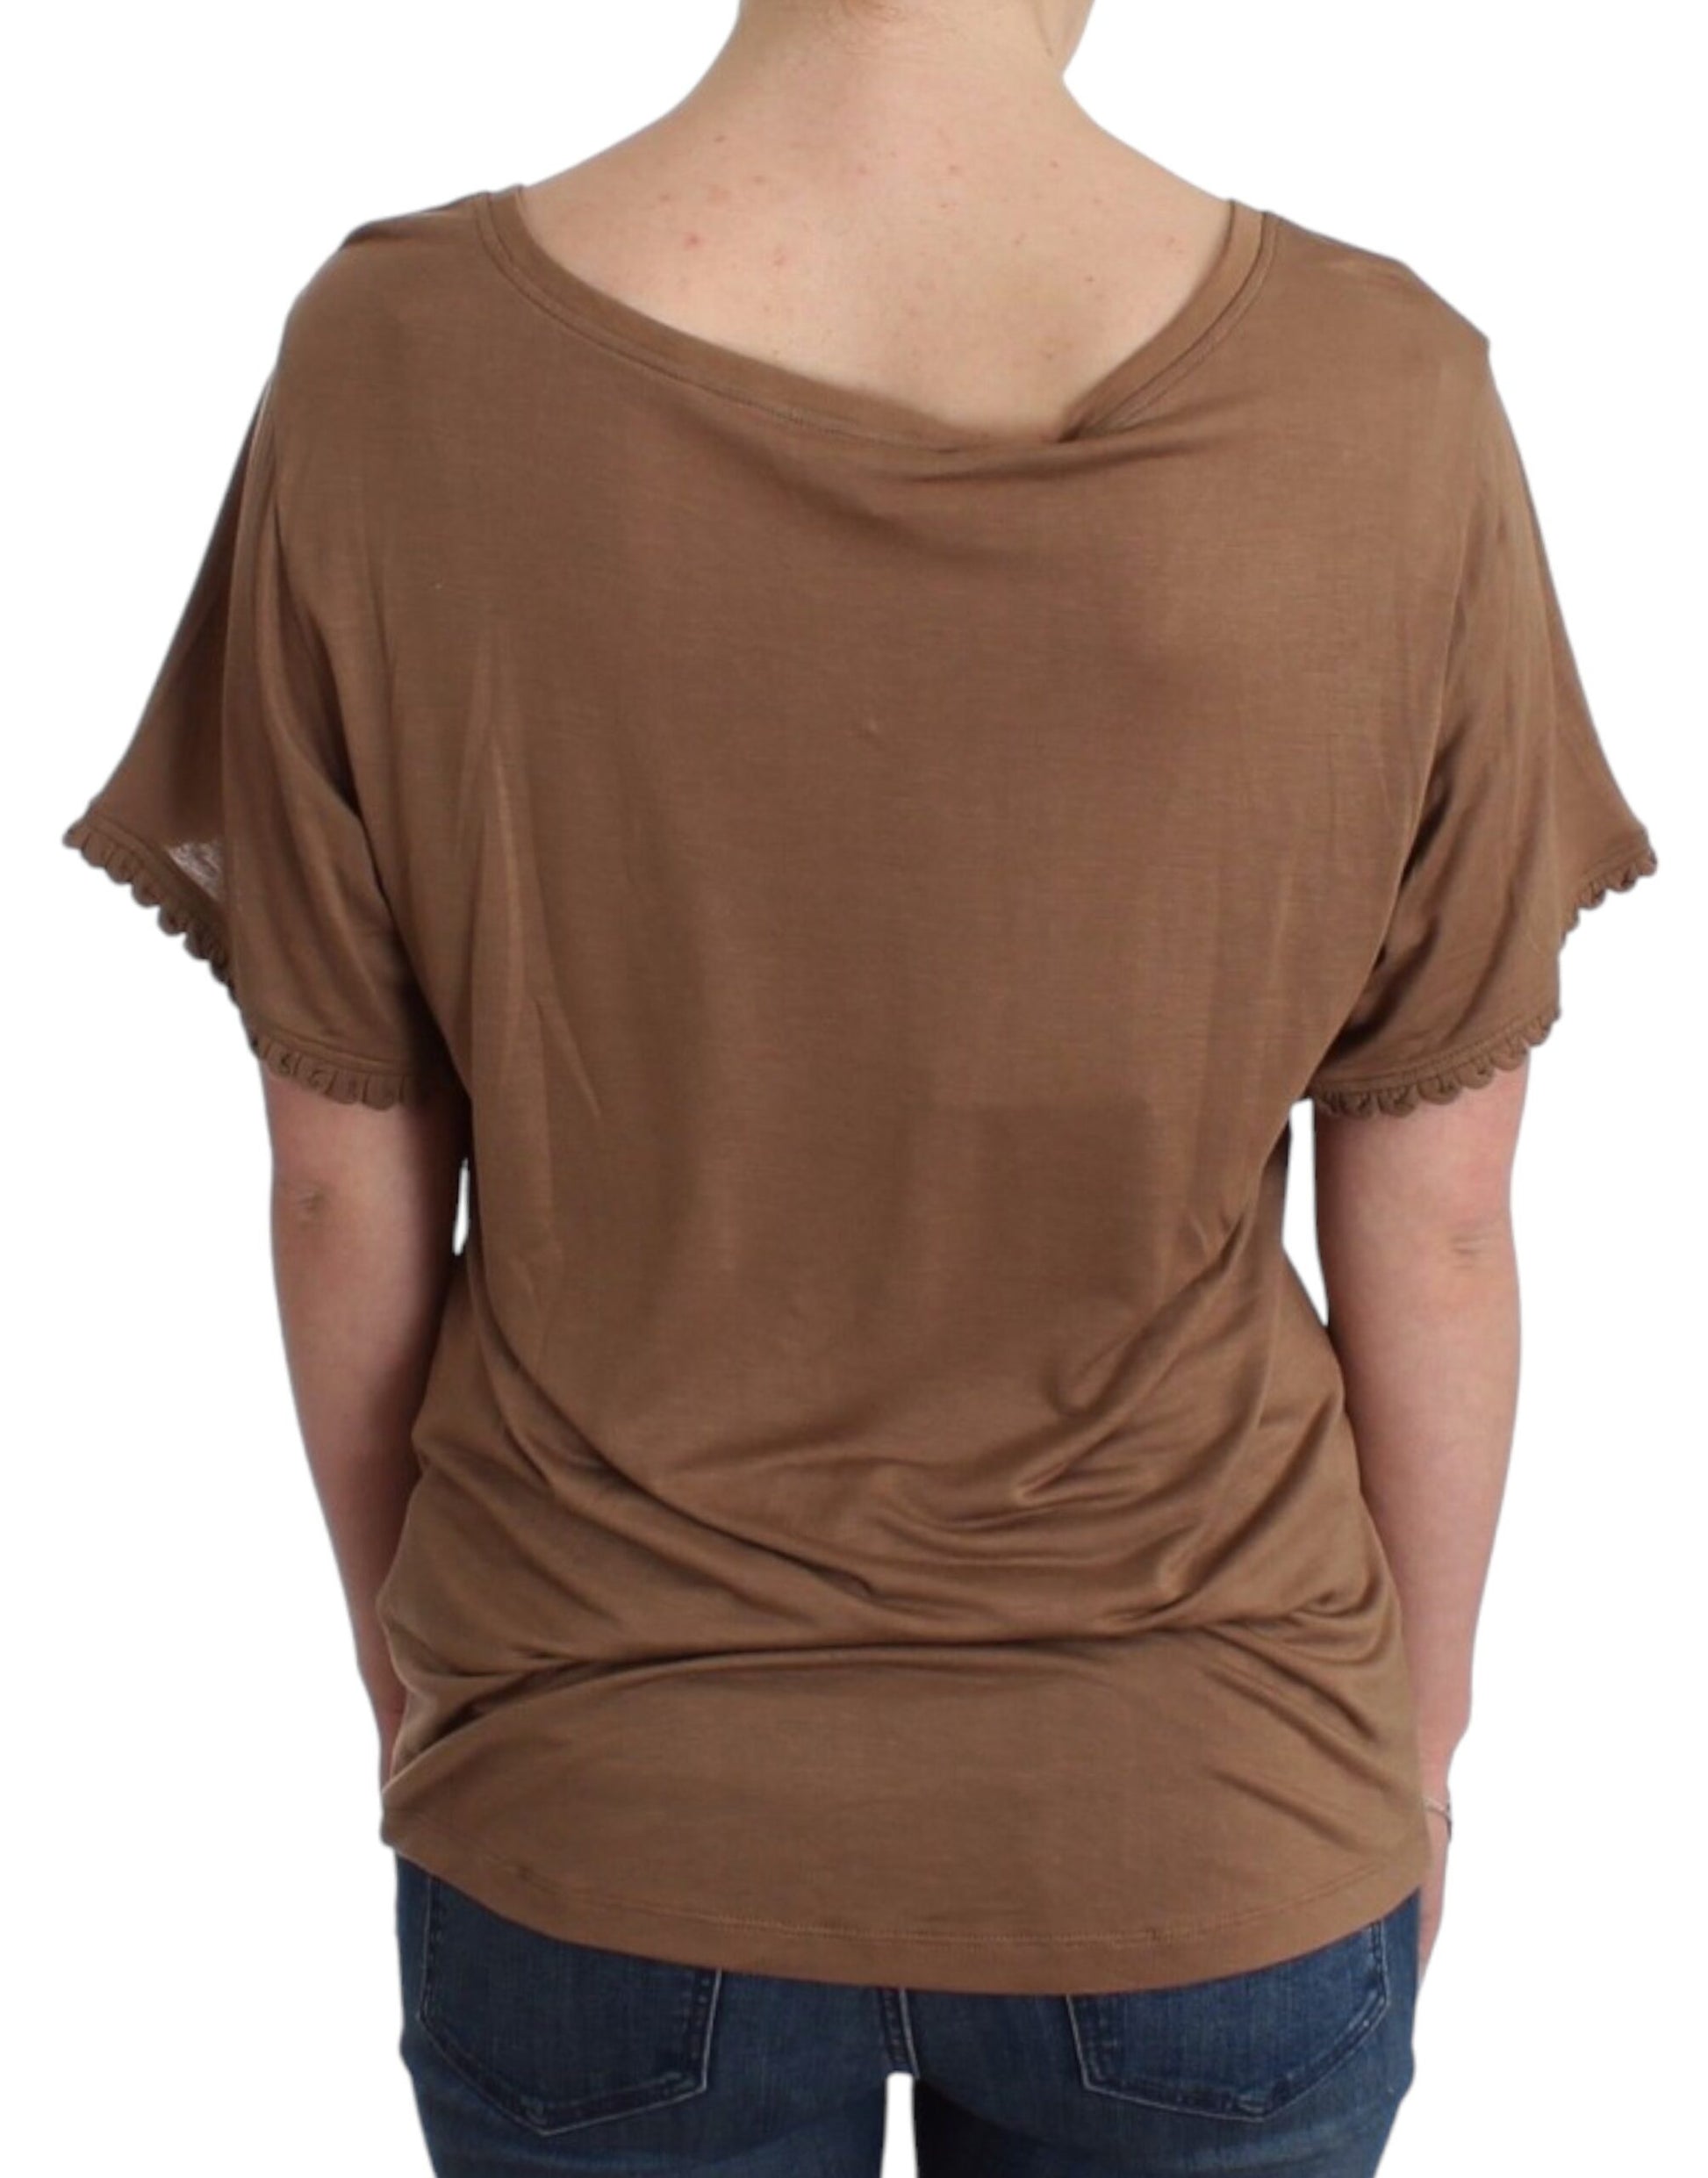 Elegant Short-Sleeved Brown Rayon Top